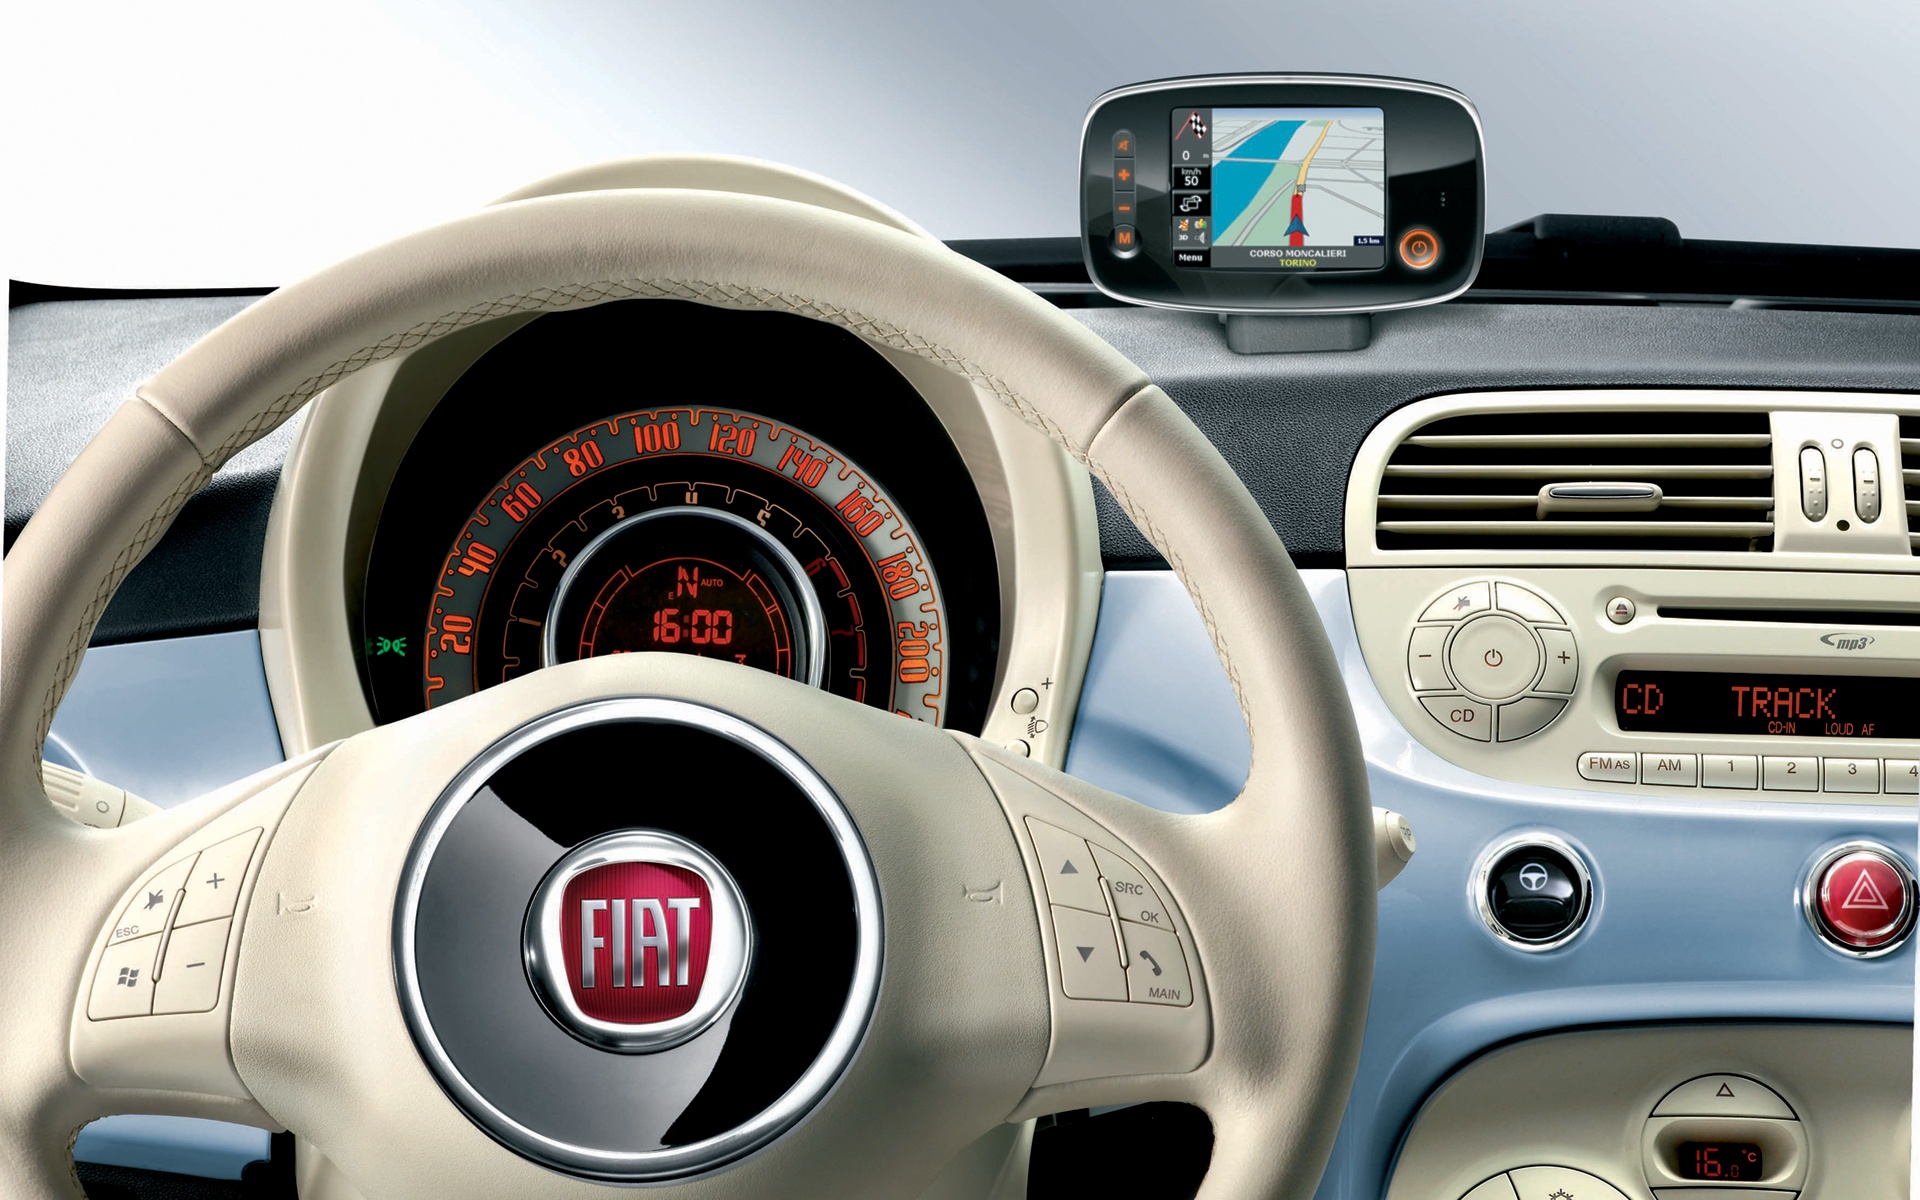 576208 descargar imagen vehículos, cabina de coche: fondos de pantalla y protectores de pantalla gratis